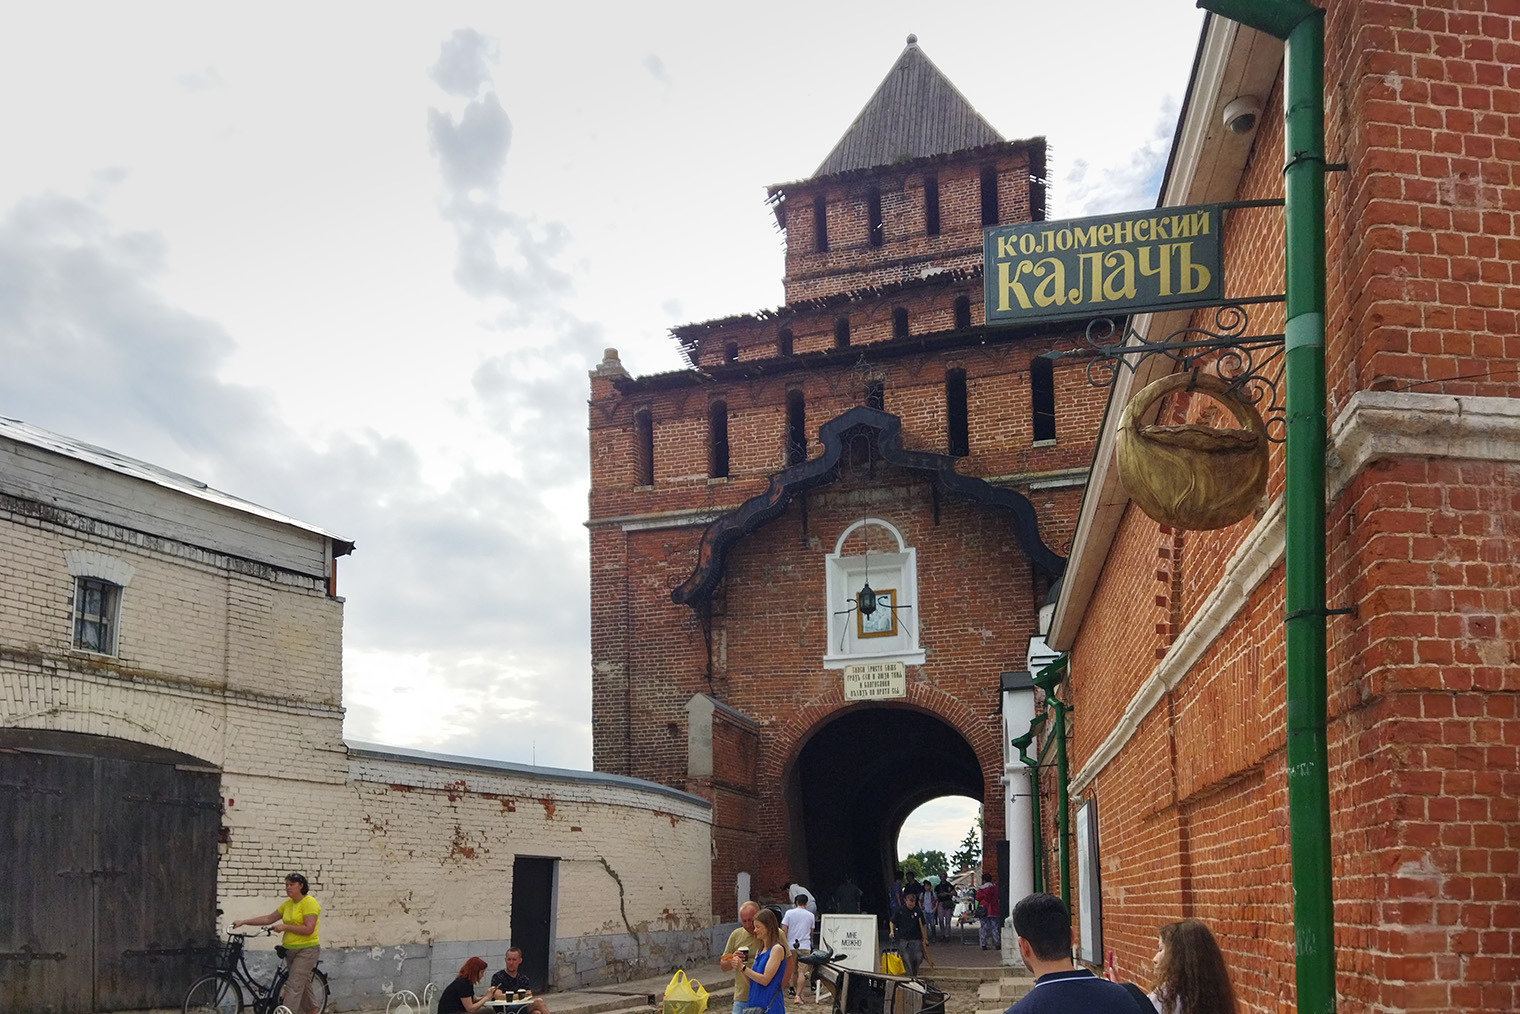 Пятницкие ворота, через которые входят на территорию кремля